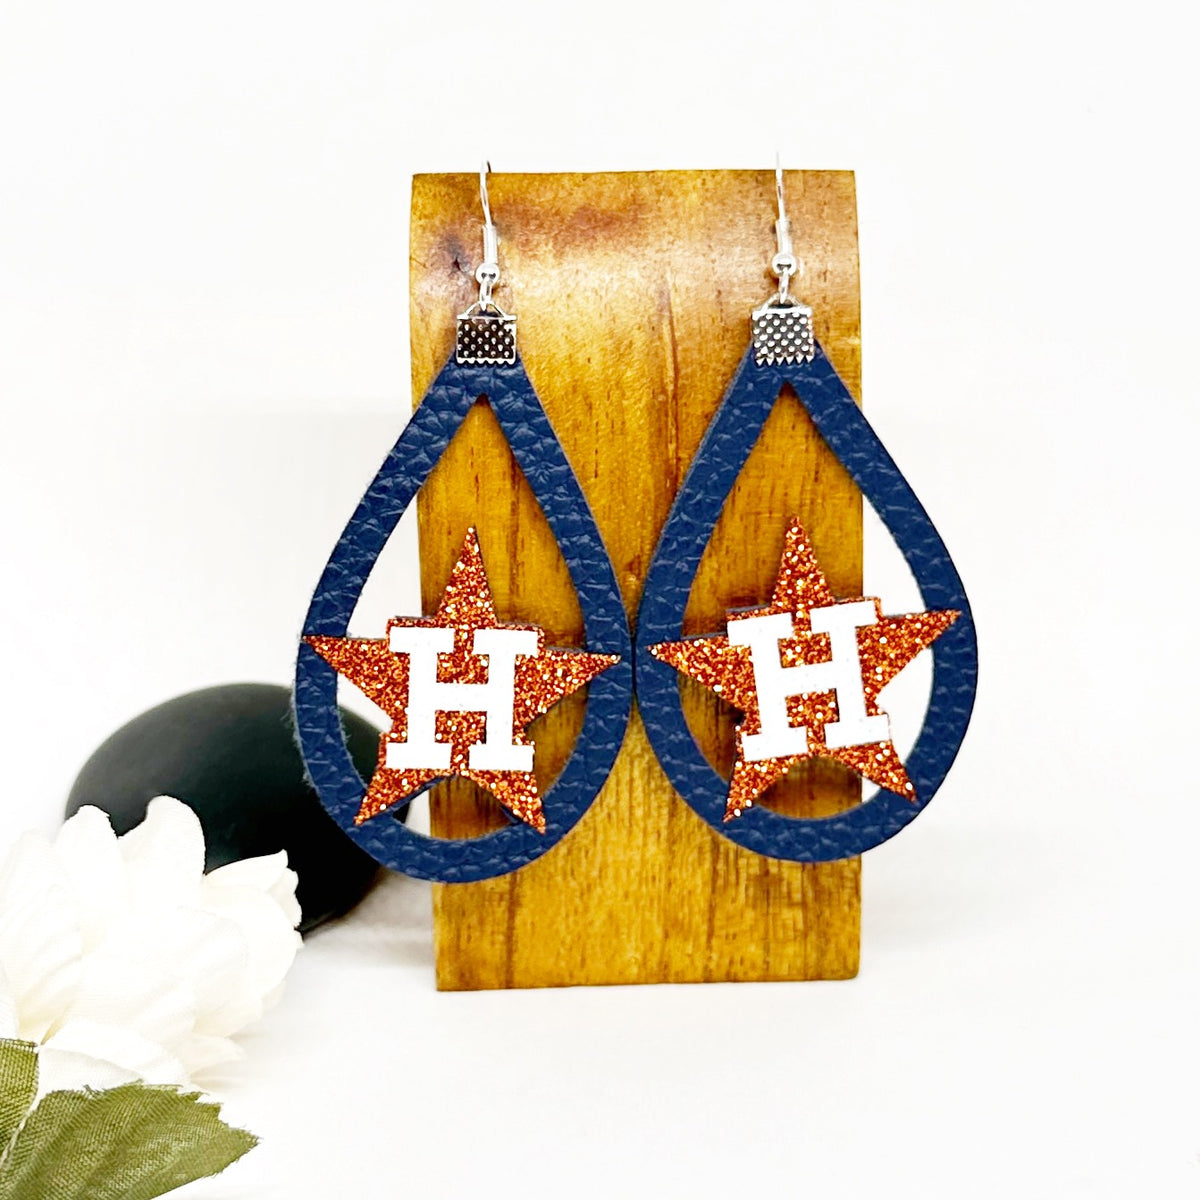 Astros Inspired Earrings/ Astros Earrings/ Houston Earrings, Houston Astros, Orange and Blue Earrings, Gift for Fans